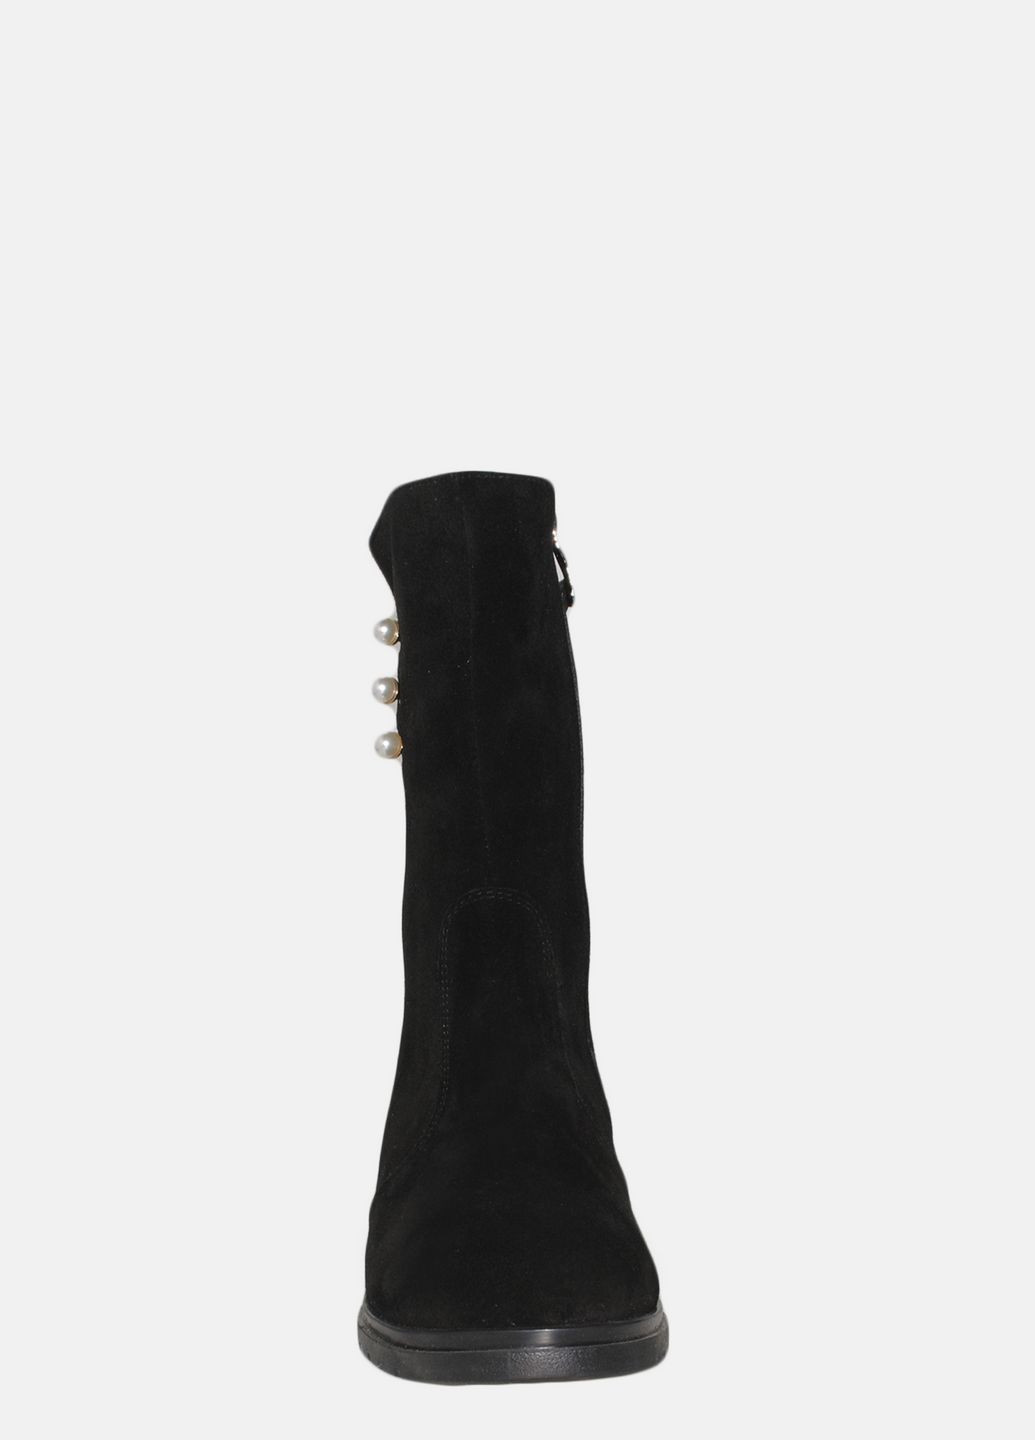 Зимние ботинки rm24-213-11 черный Mioli из натуральной замши